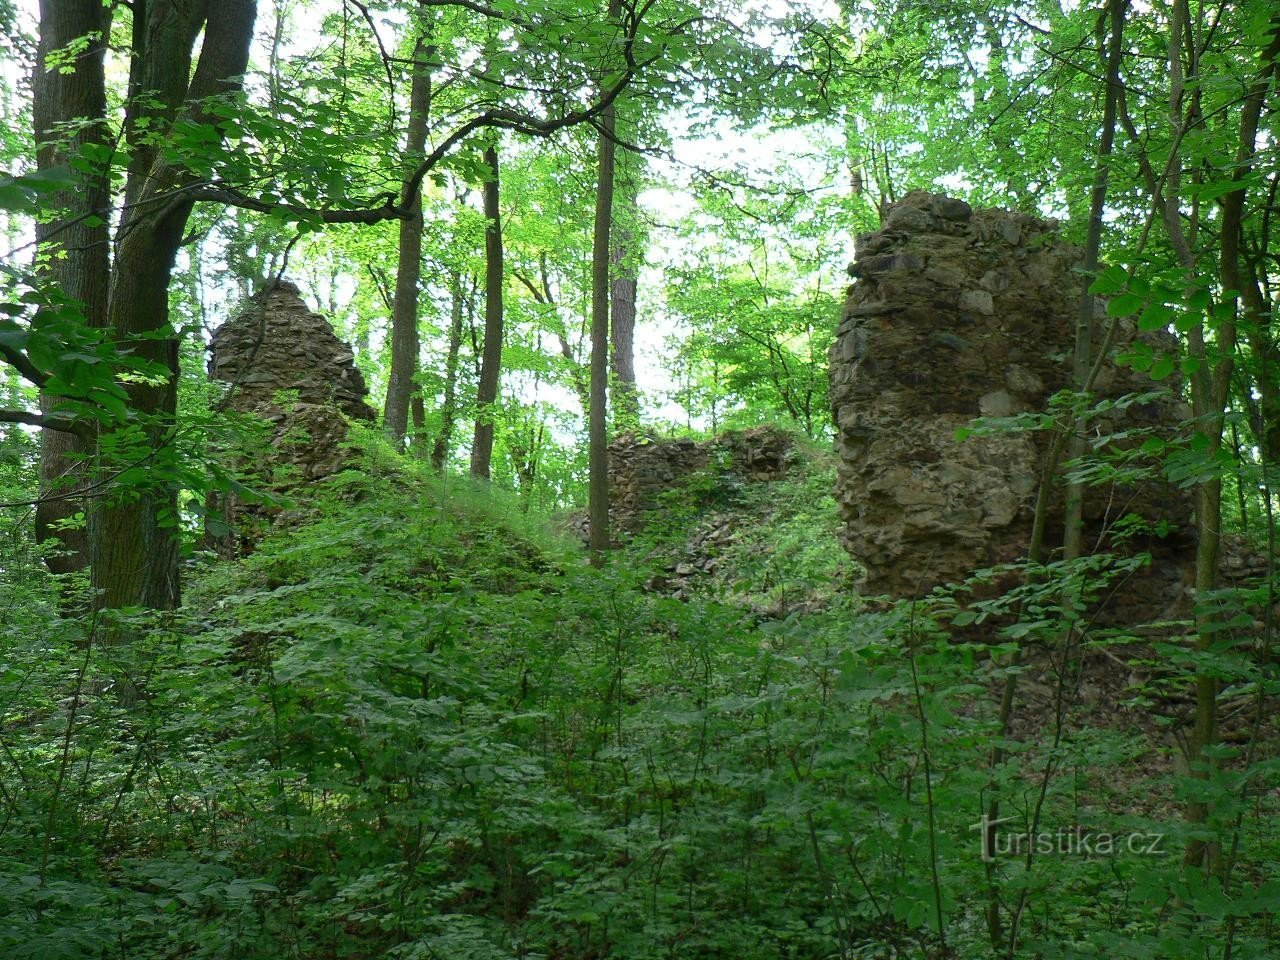 Τα ερείπια του κάστρου Pušperka